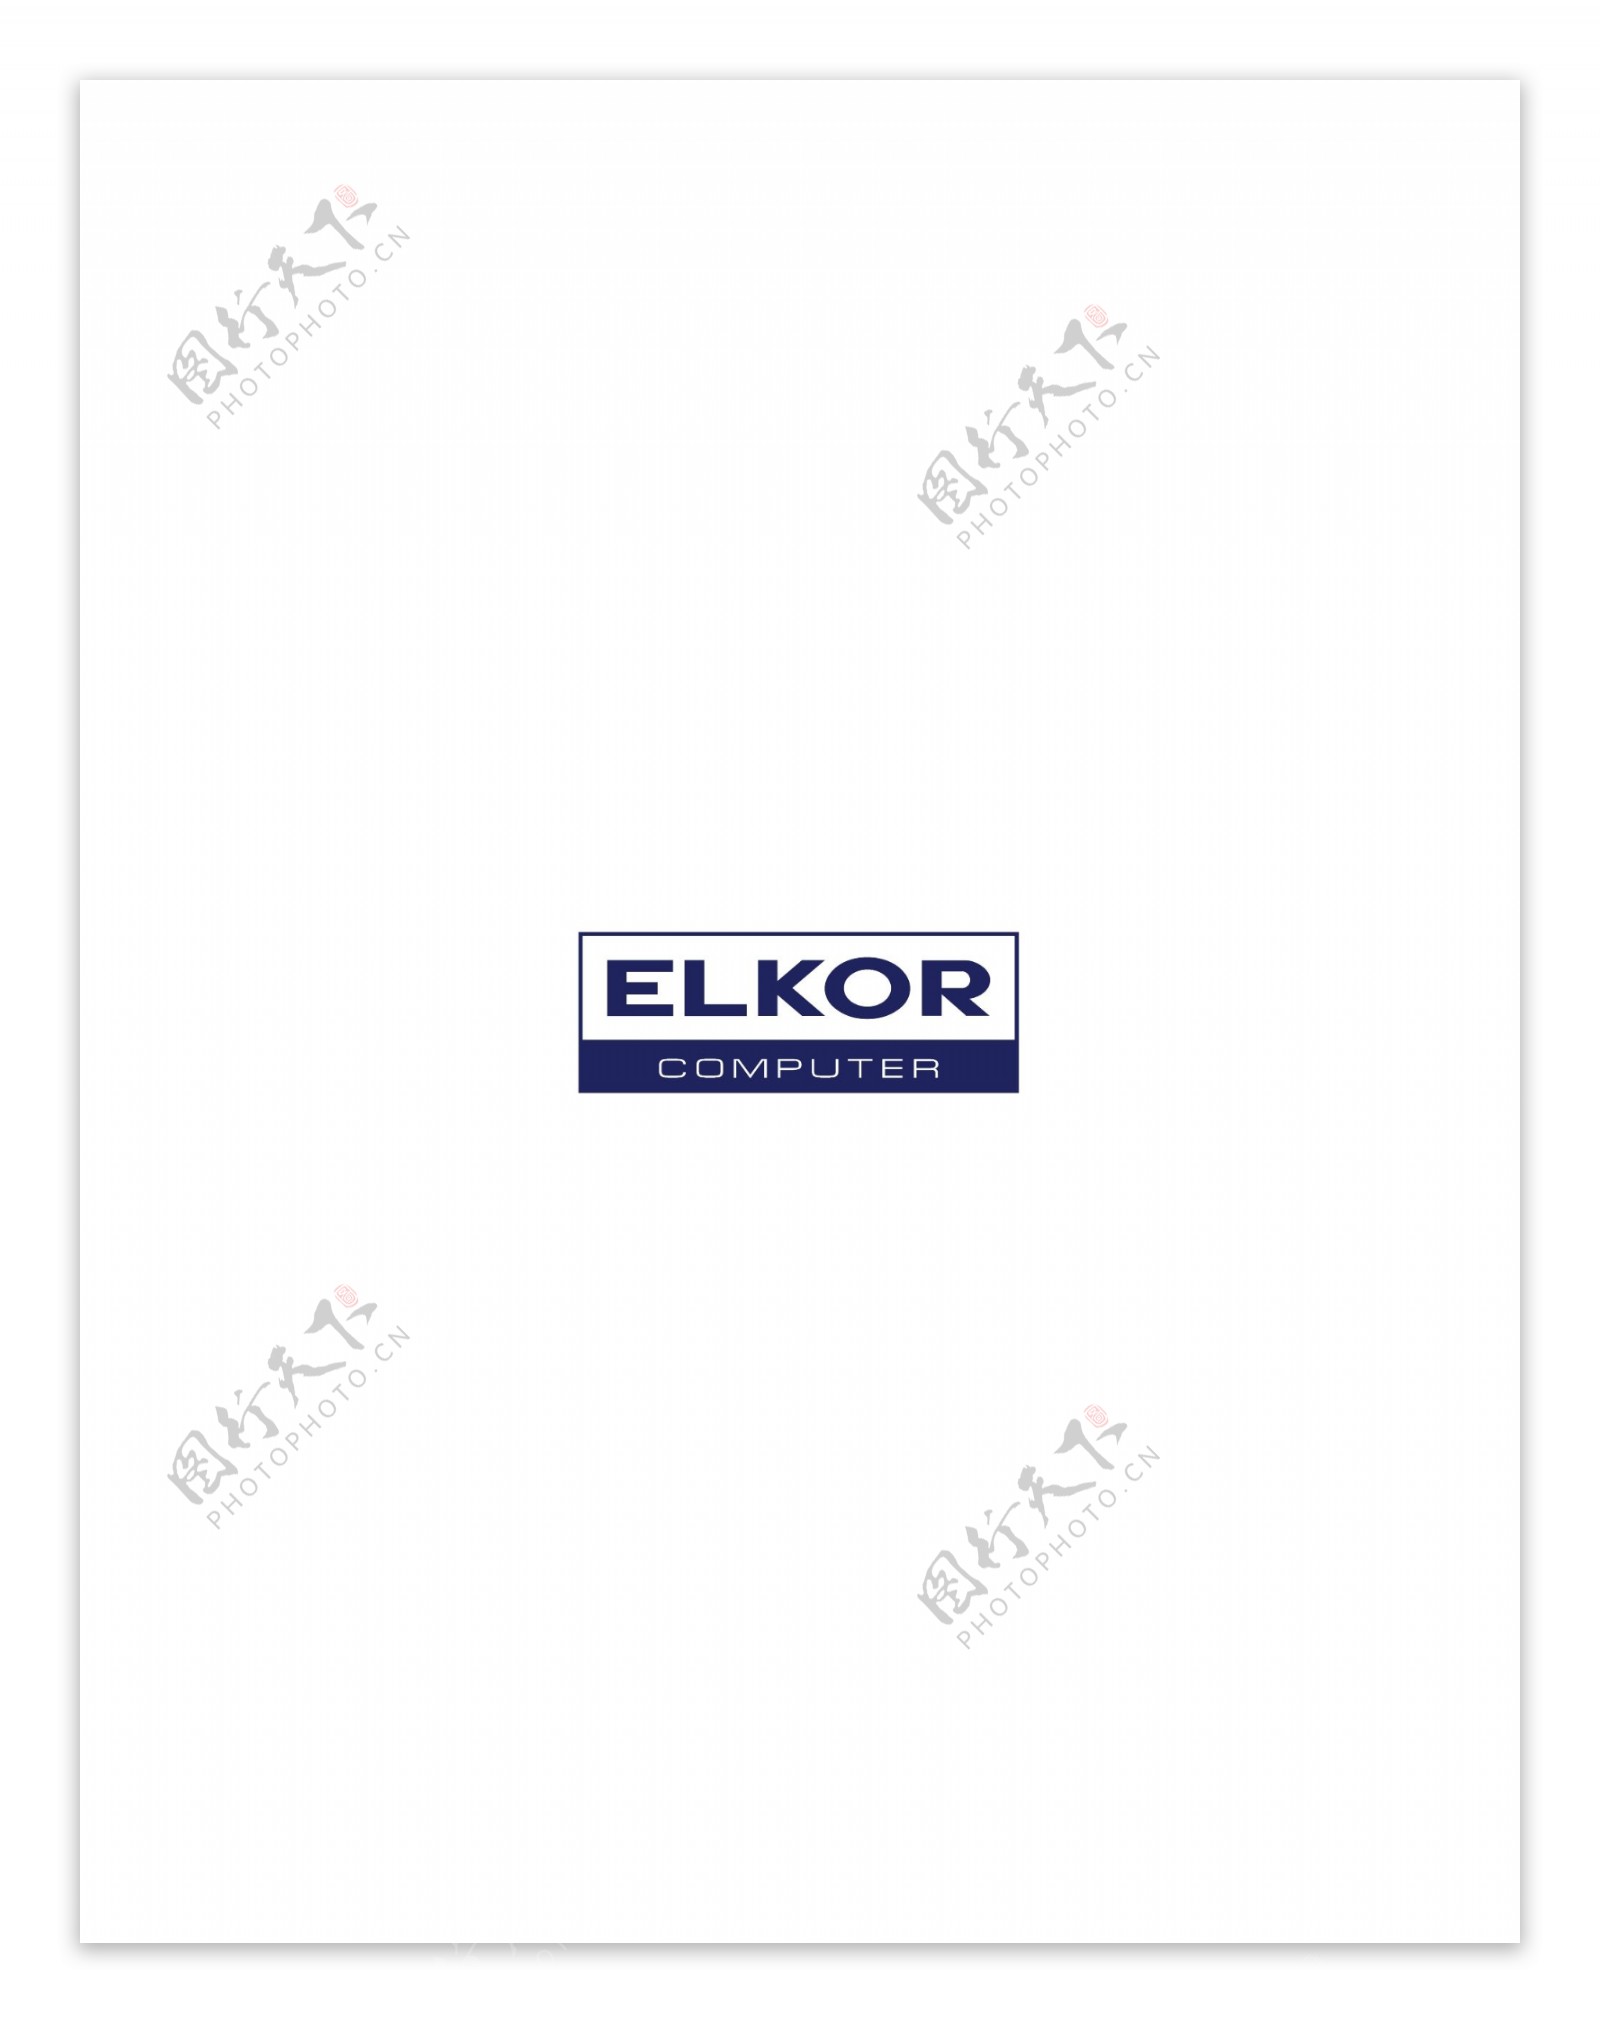 ElkorComputerlogo设计欣赏ElkorComputer电脑公司标志下载标志设计欣赏